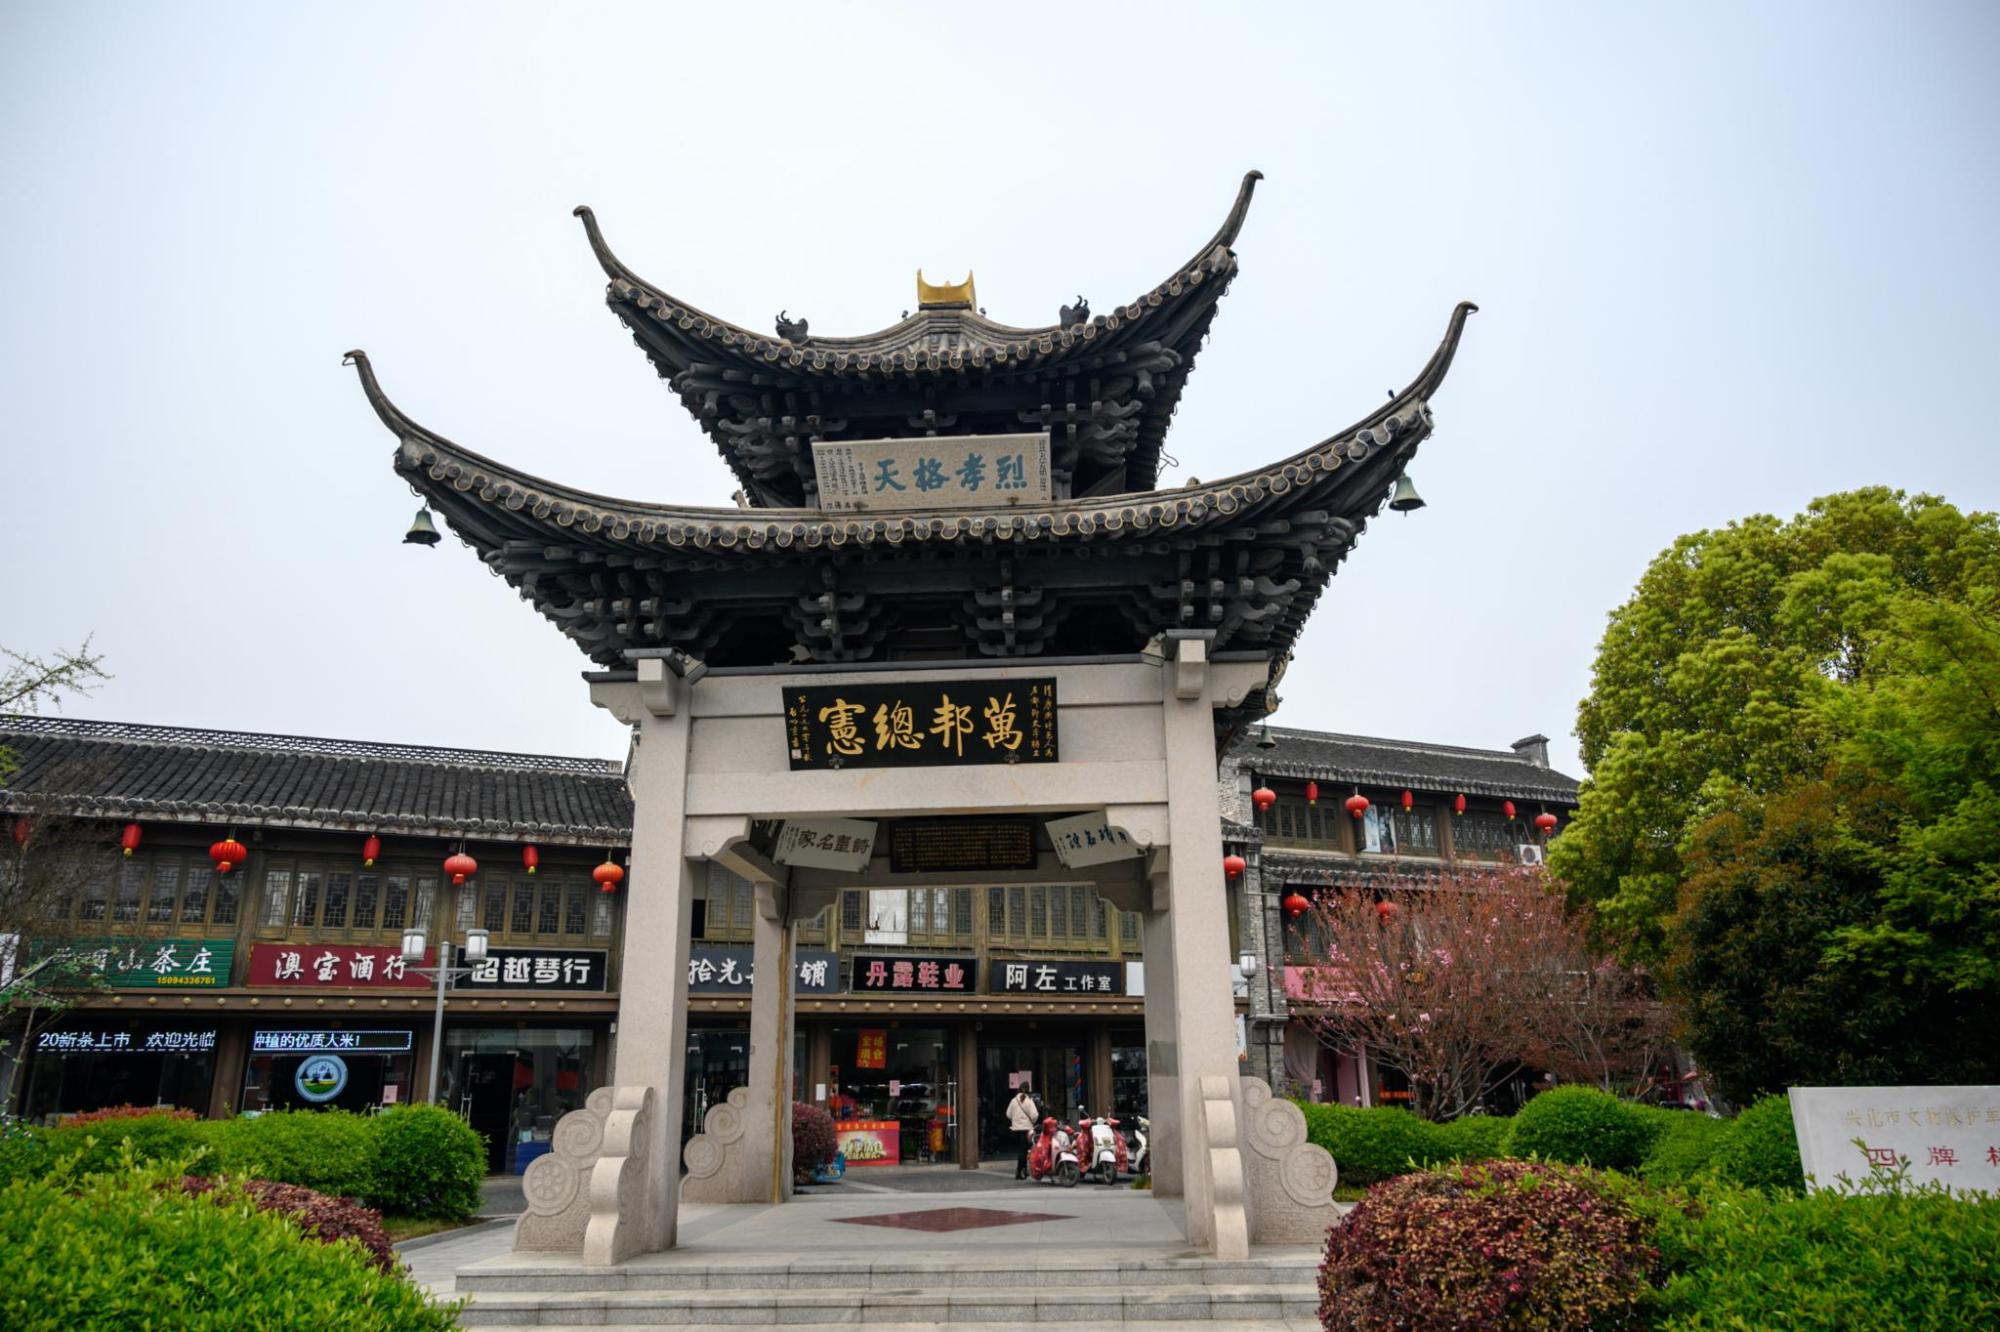 江苏最奇特的四牌楼,悬挂着47块匾额,建造年份至今不明